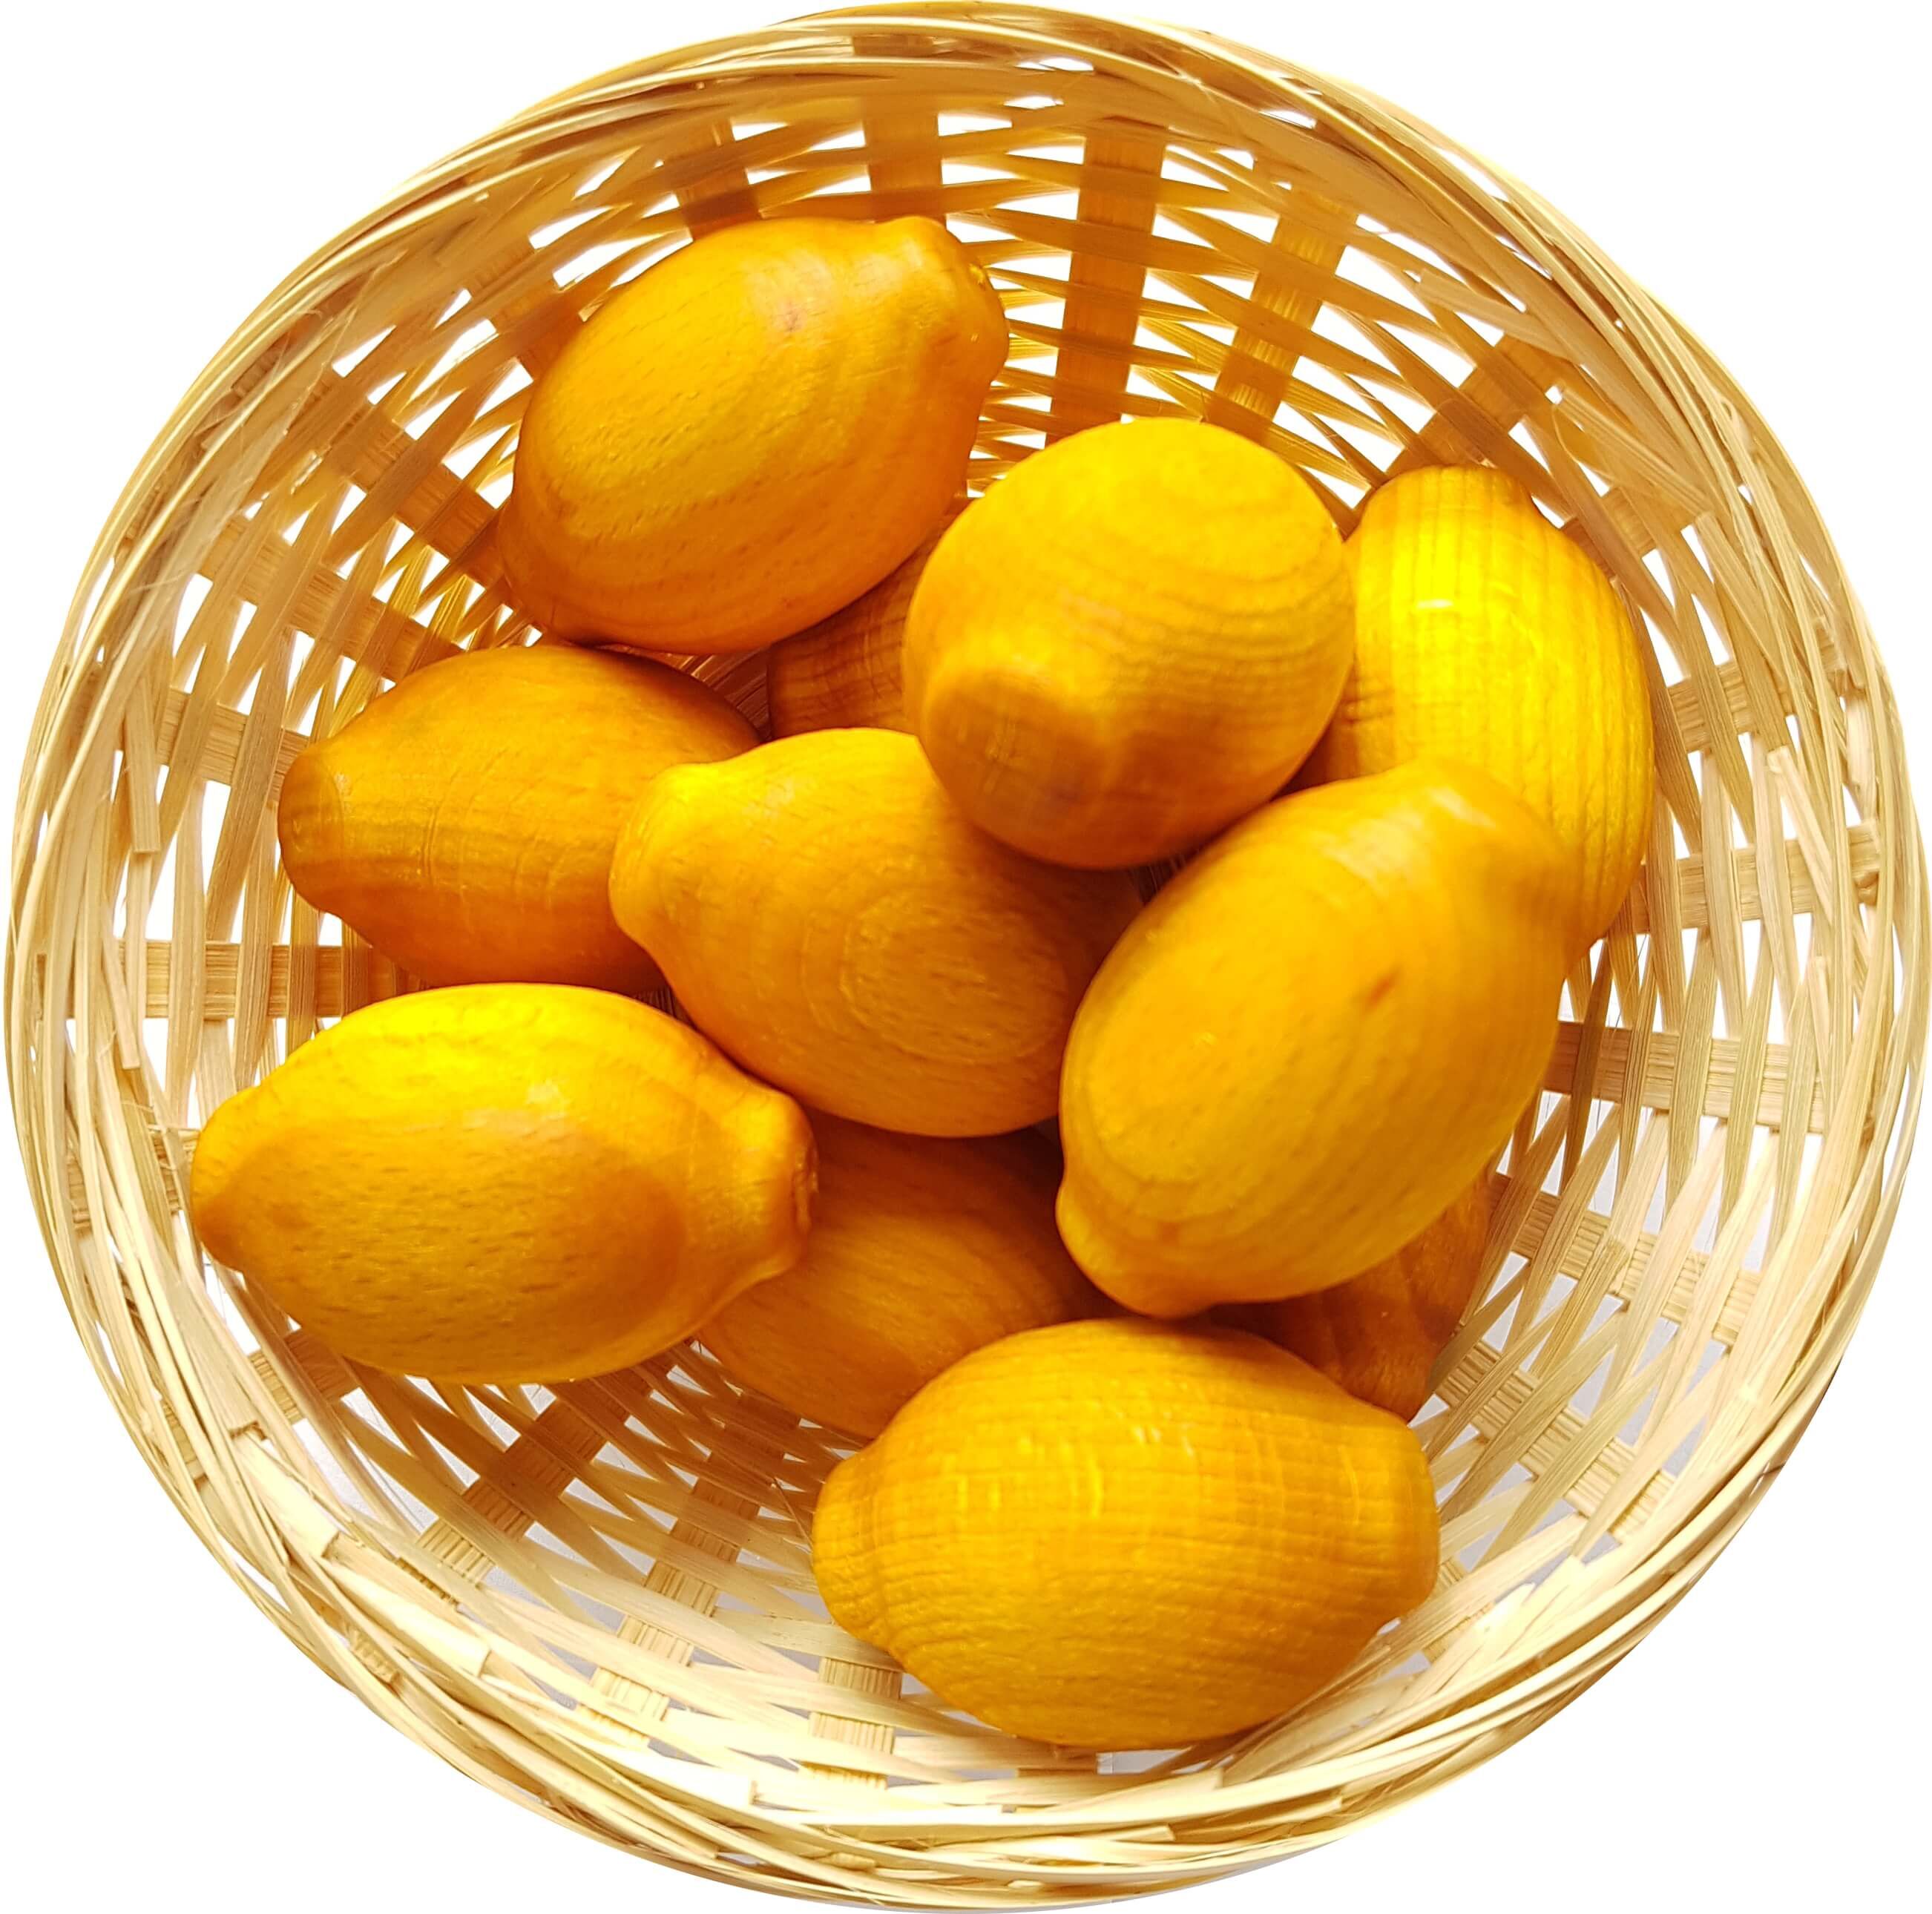 50x Zitrone Duftholz zur Lufterfrischung und Raumbeduftung - Dufthölzer - Duftfrüchte - Duftkugel